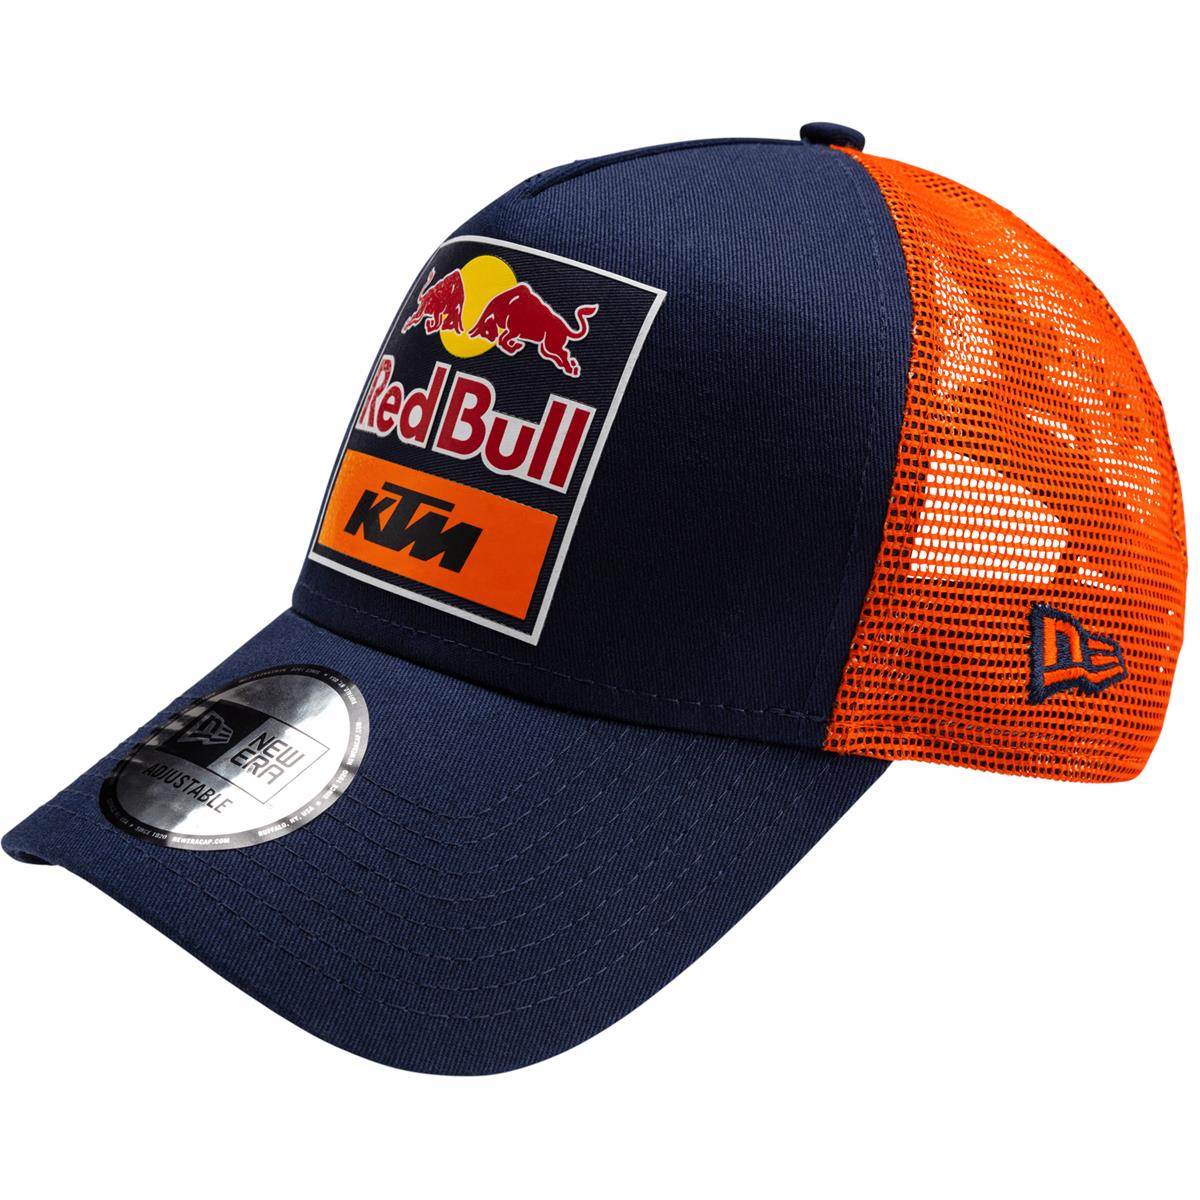 Red Bull Trucker Cap KTM Official Teamline Replica - Navy/Orange